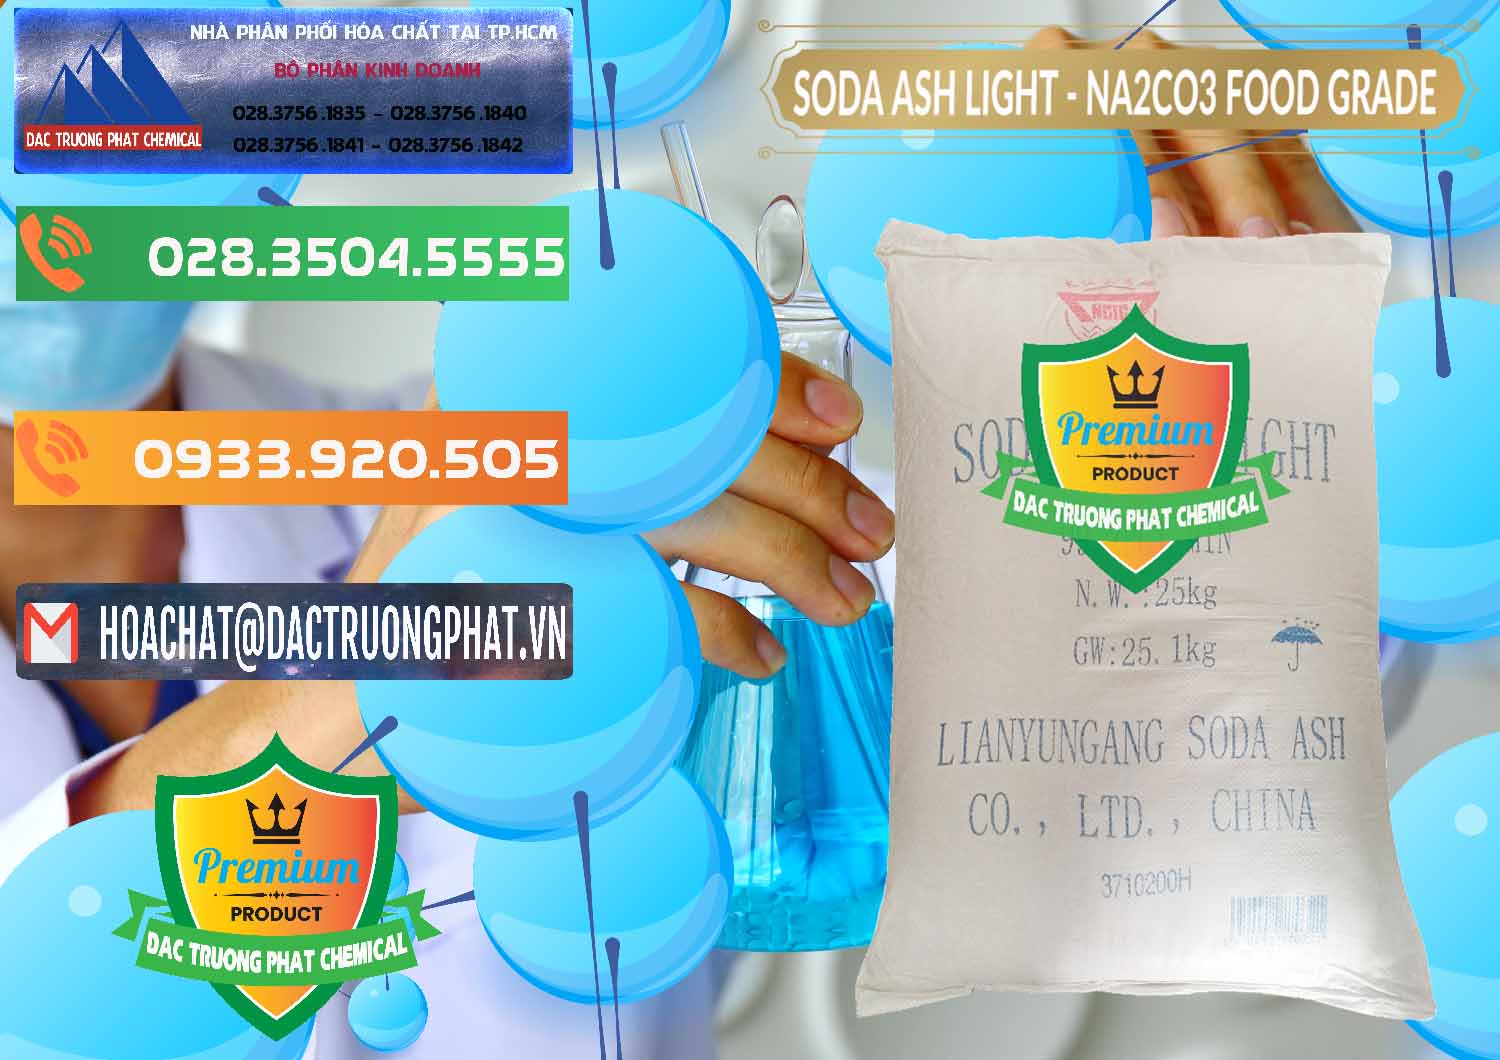 Cty chuyên cung cấp - bán Soda Ash Light – NA2CO3 Food Grade Trung Quốc China - 0127 - Chuyên kinh doanh & cung cấp hóa chất tại TP.HCM - hoachatxulynuoc.com.vn